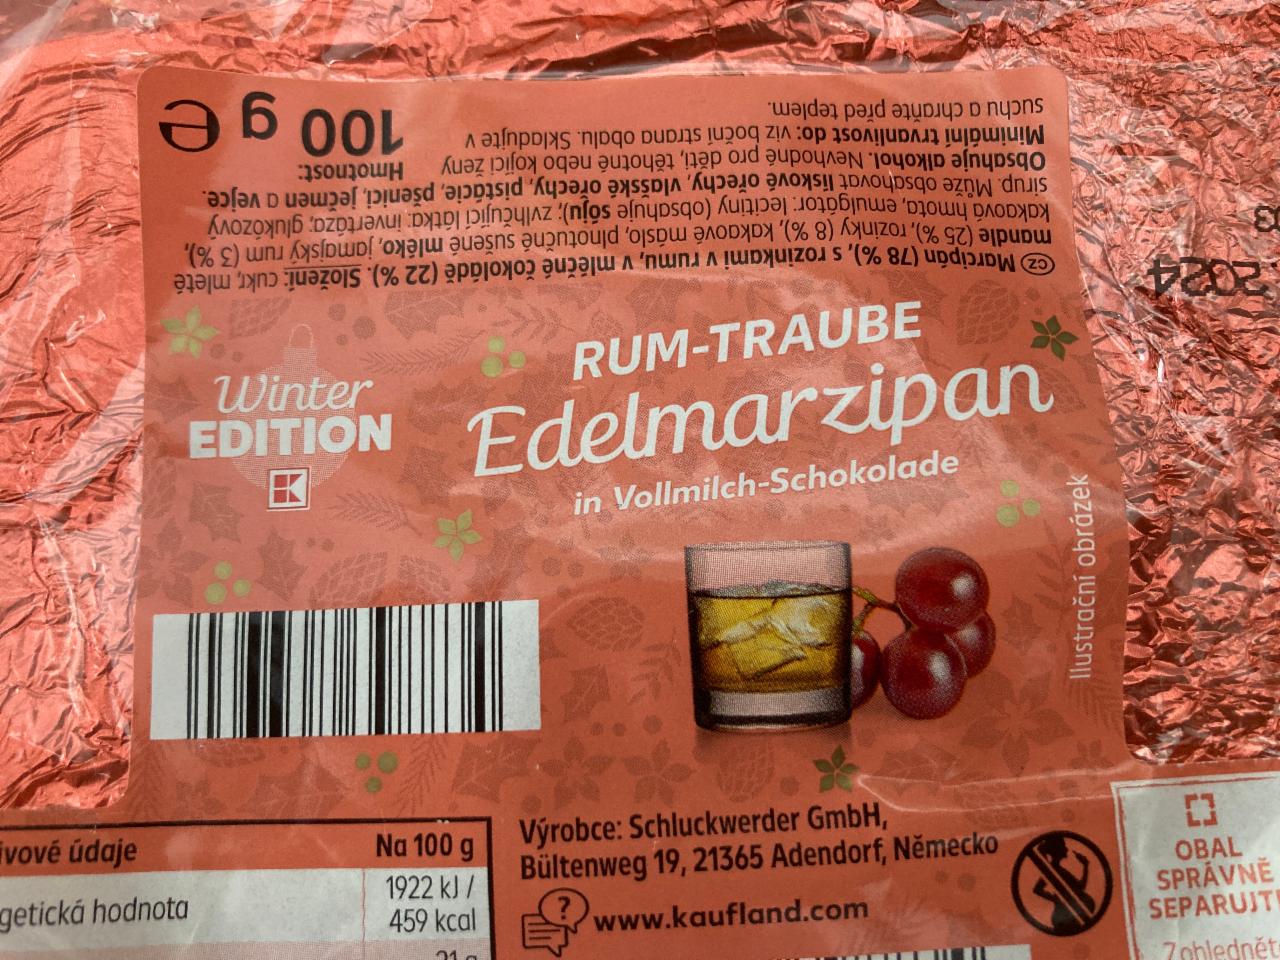 Fotografie - Rum-Traube Edelmarzipan in Vollmilch Schokolade Kaufland